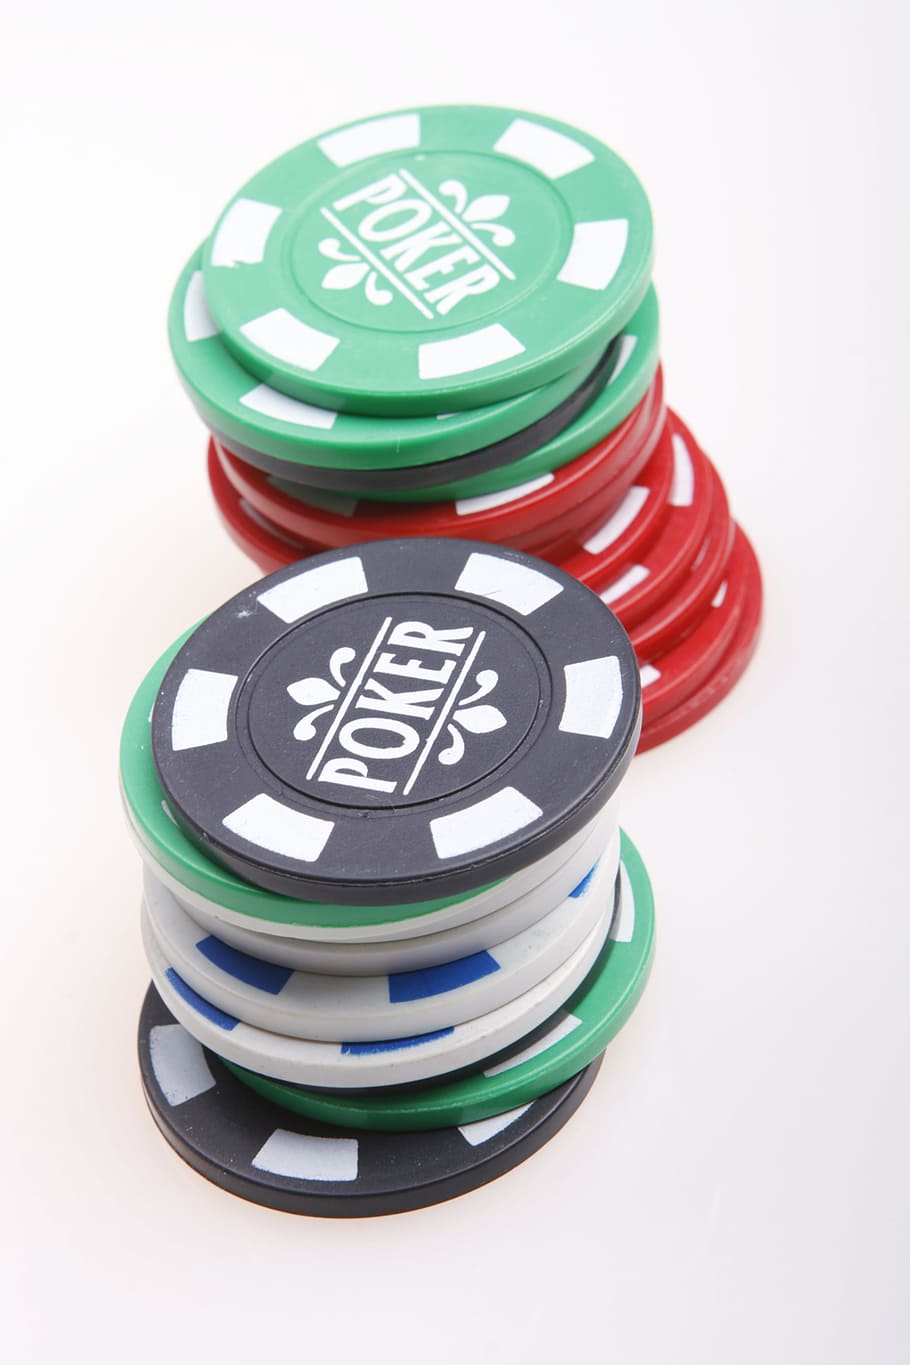 казино, фишка, фишки, монета, азартная игра, куча, покер, выигрыш, белый фон, Студийный снимок